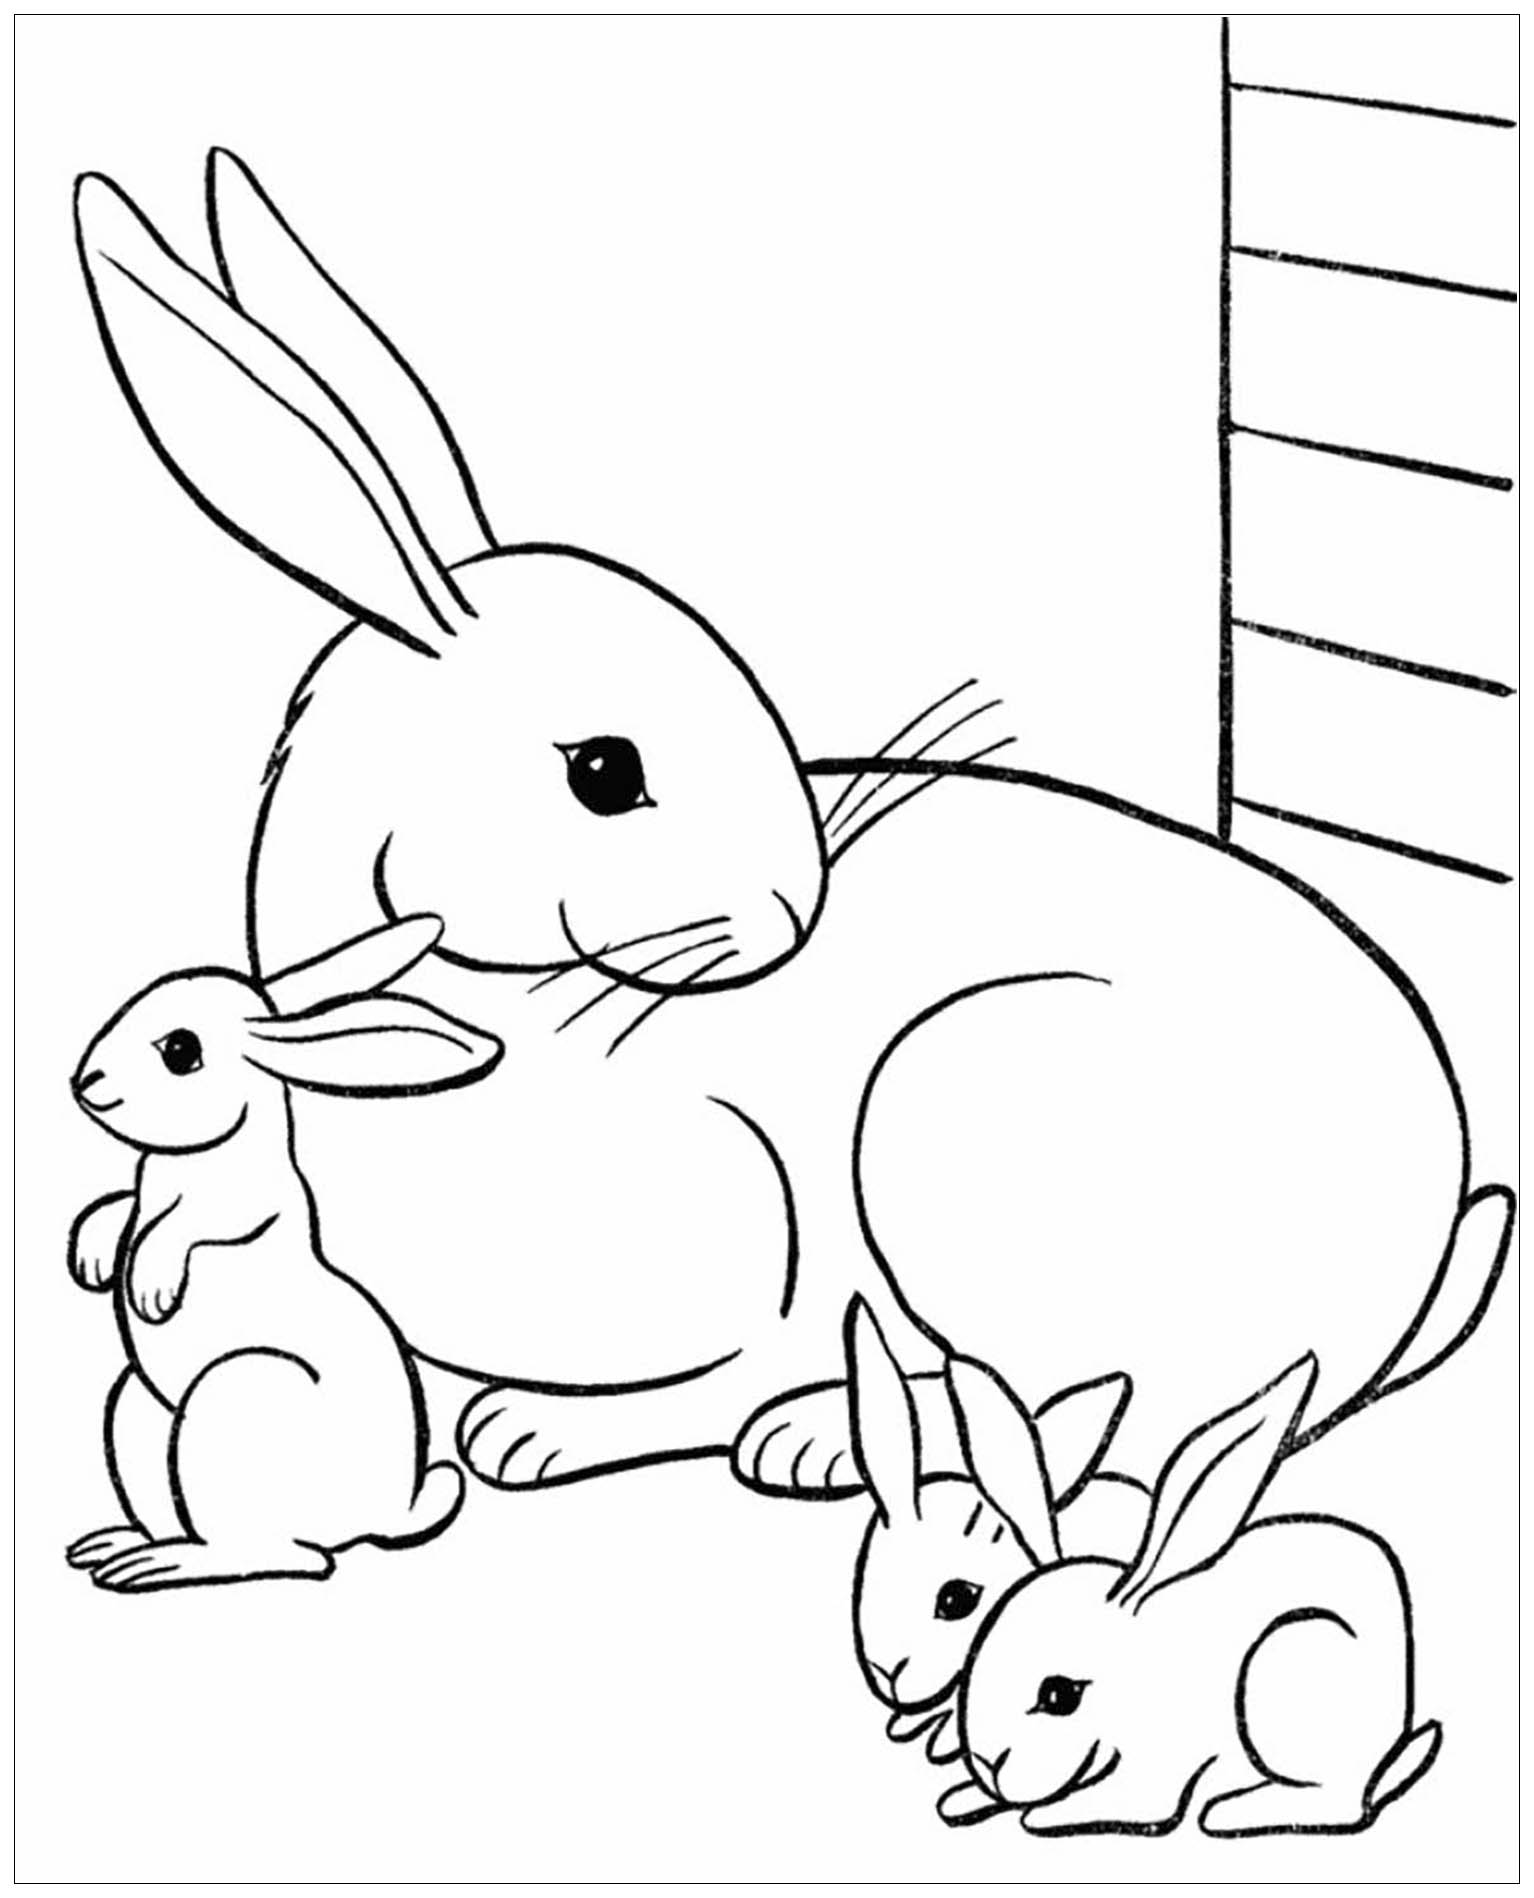 Préparez vos crayons et feutres pour colorier ce coloriage de lapin